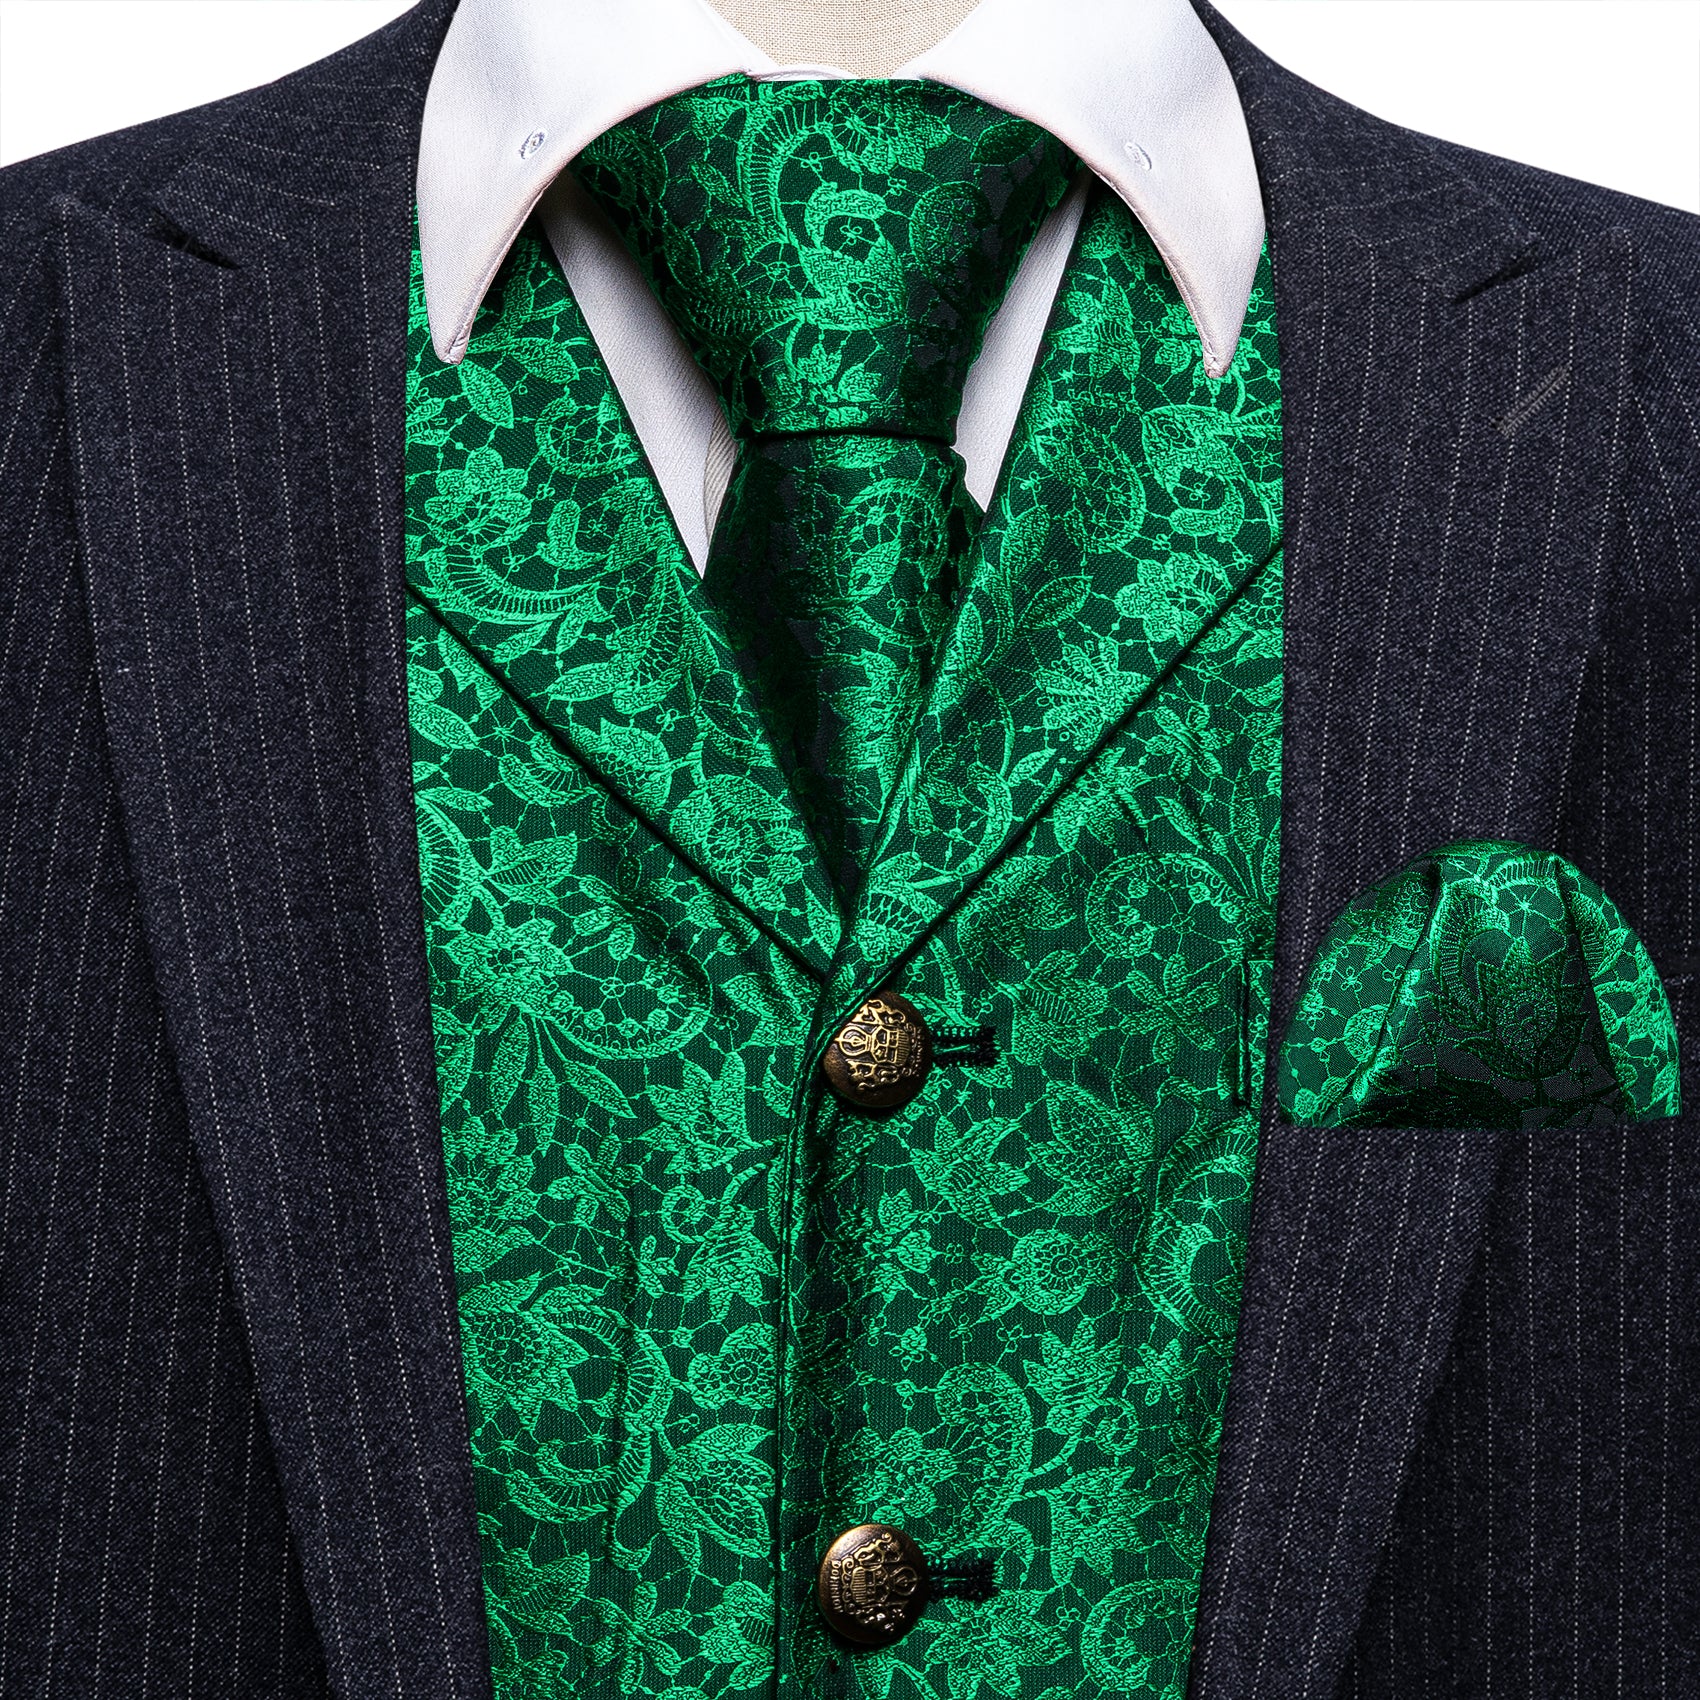 Bright Green Floral Silk Vest Necktie Pocket Square Cufflinks Set